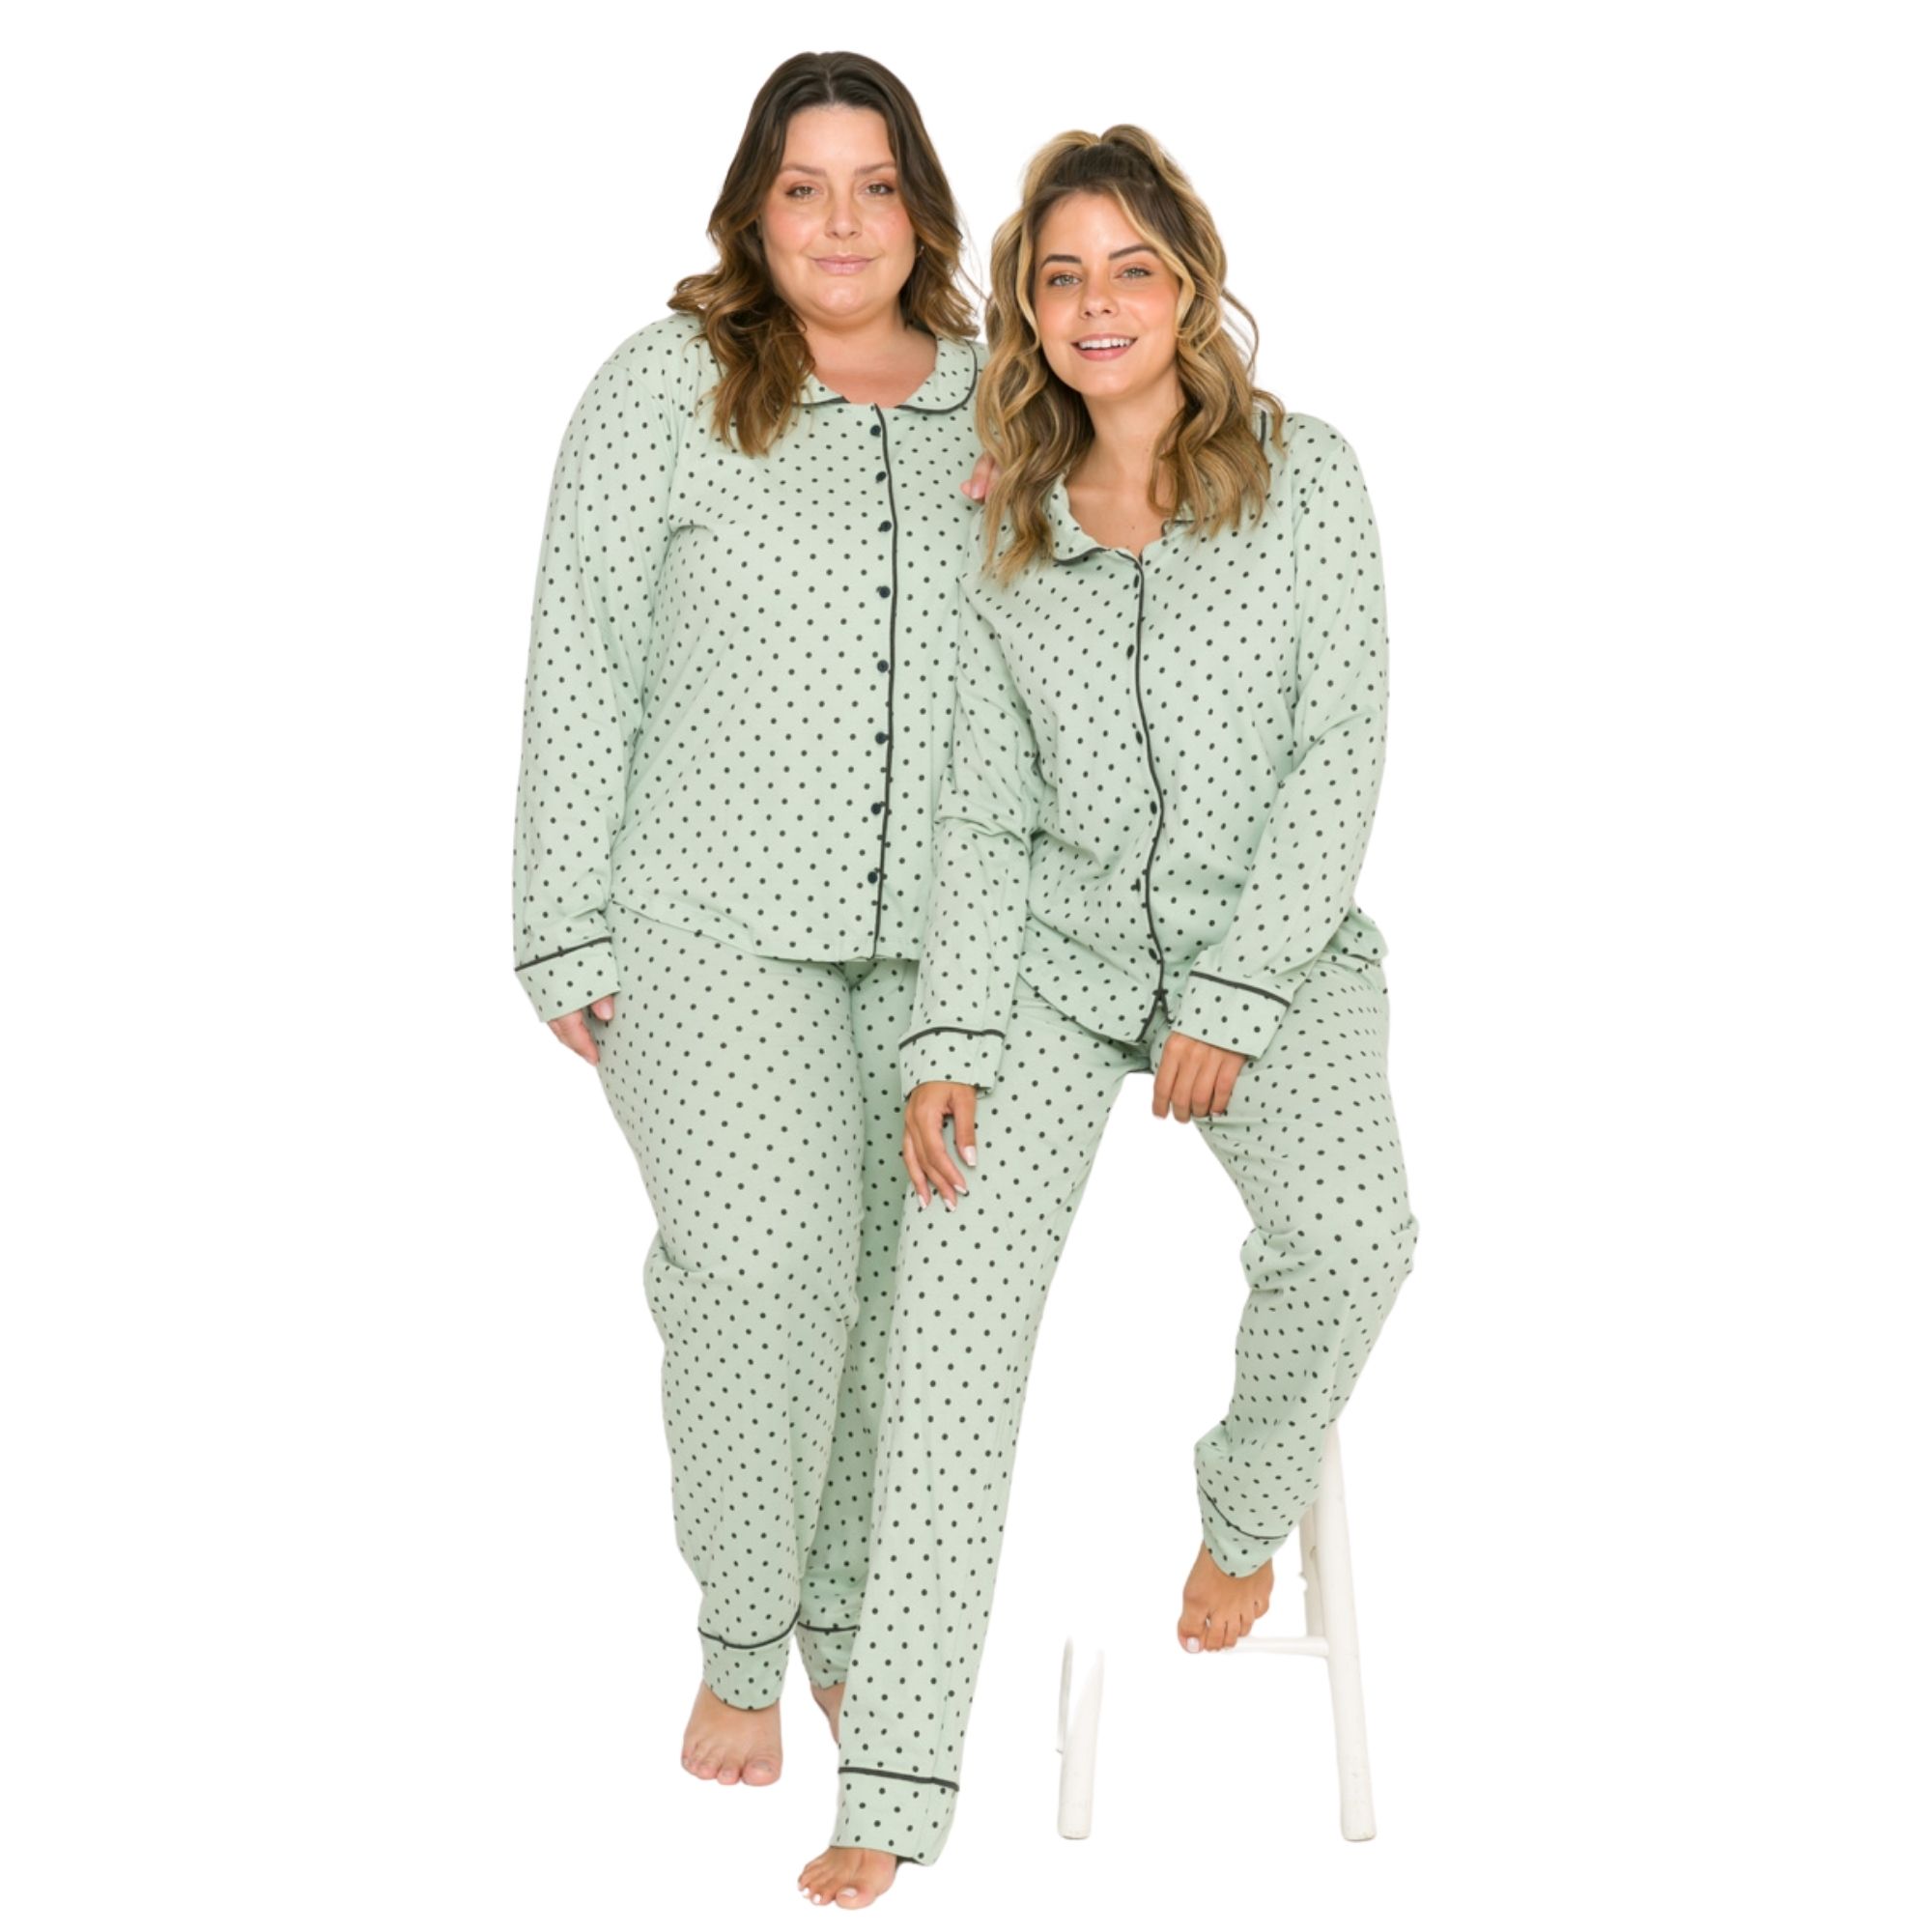 Pijama adulto inverno estilo americano poá verde